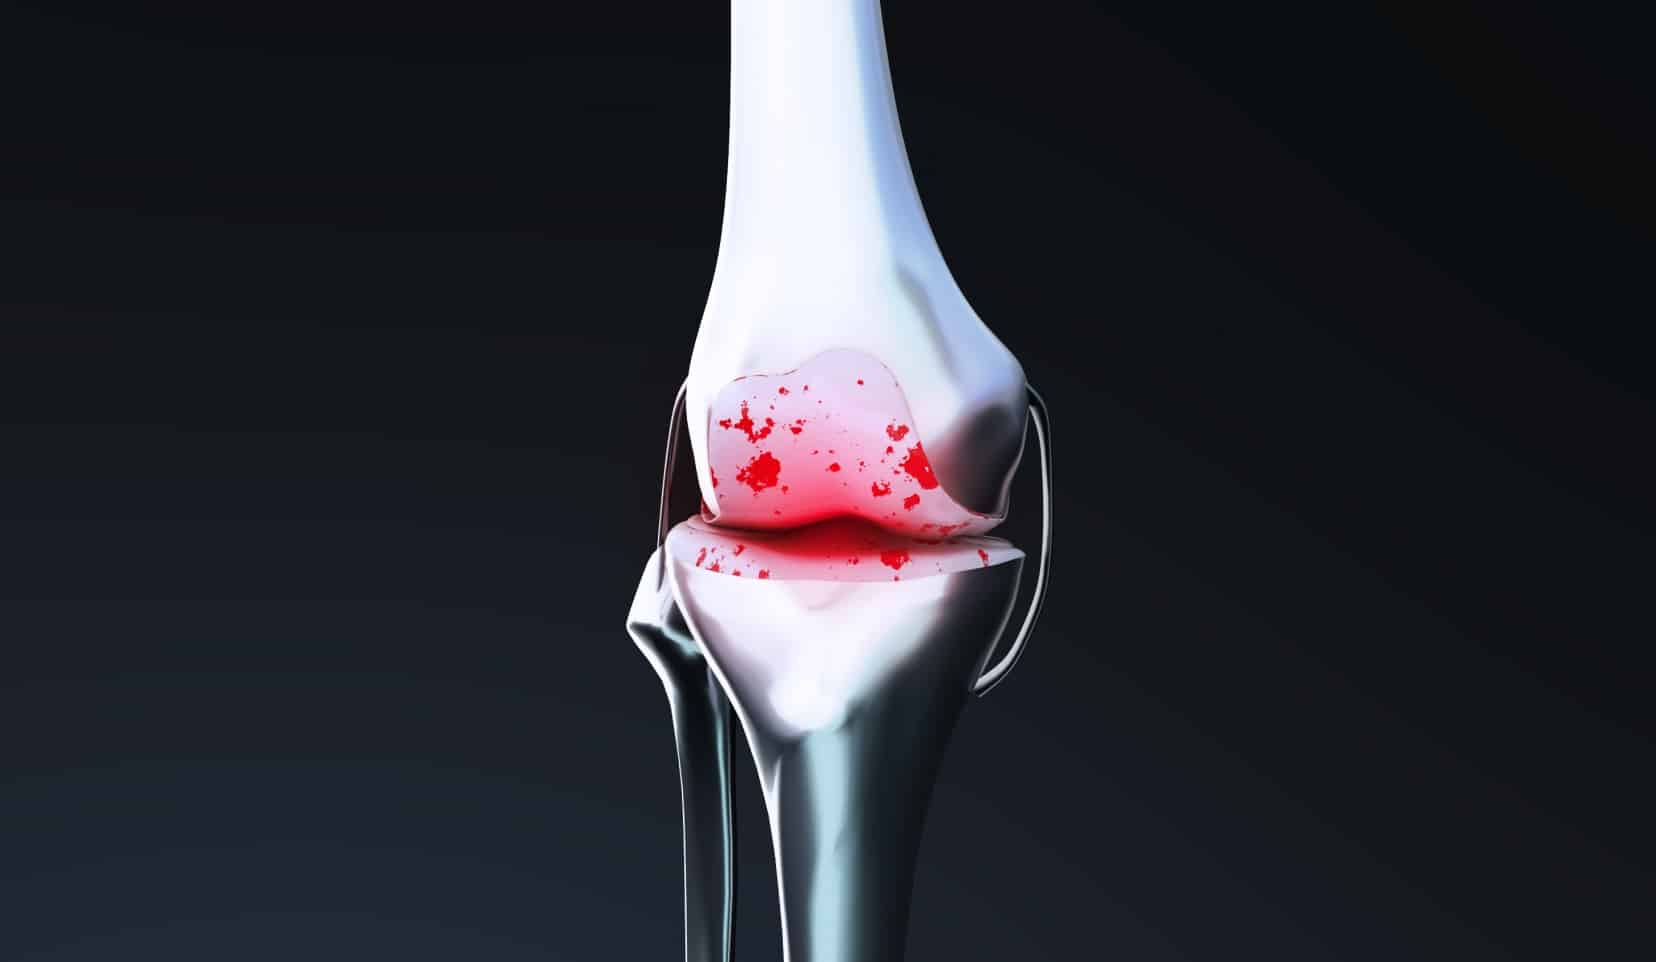 Reprise de prothèse genou : orthopédiste | Spécialiste du genou | Bois-Guillaume | Dr Polle